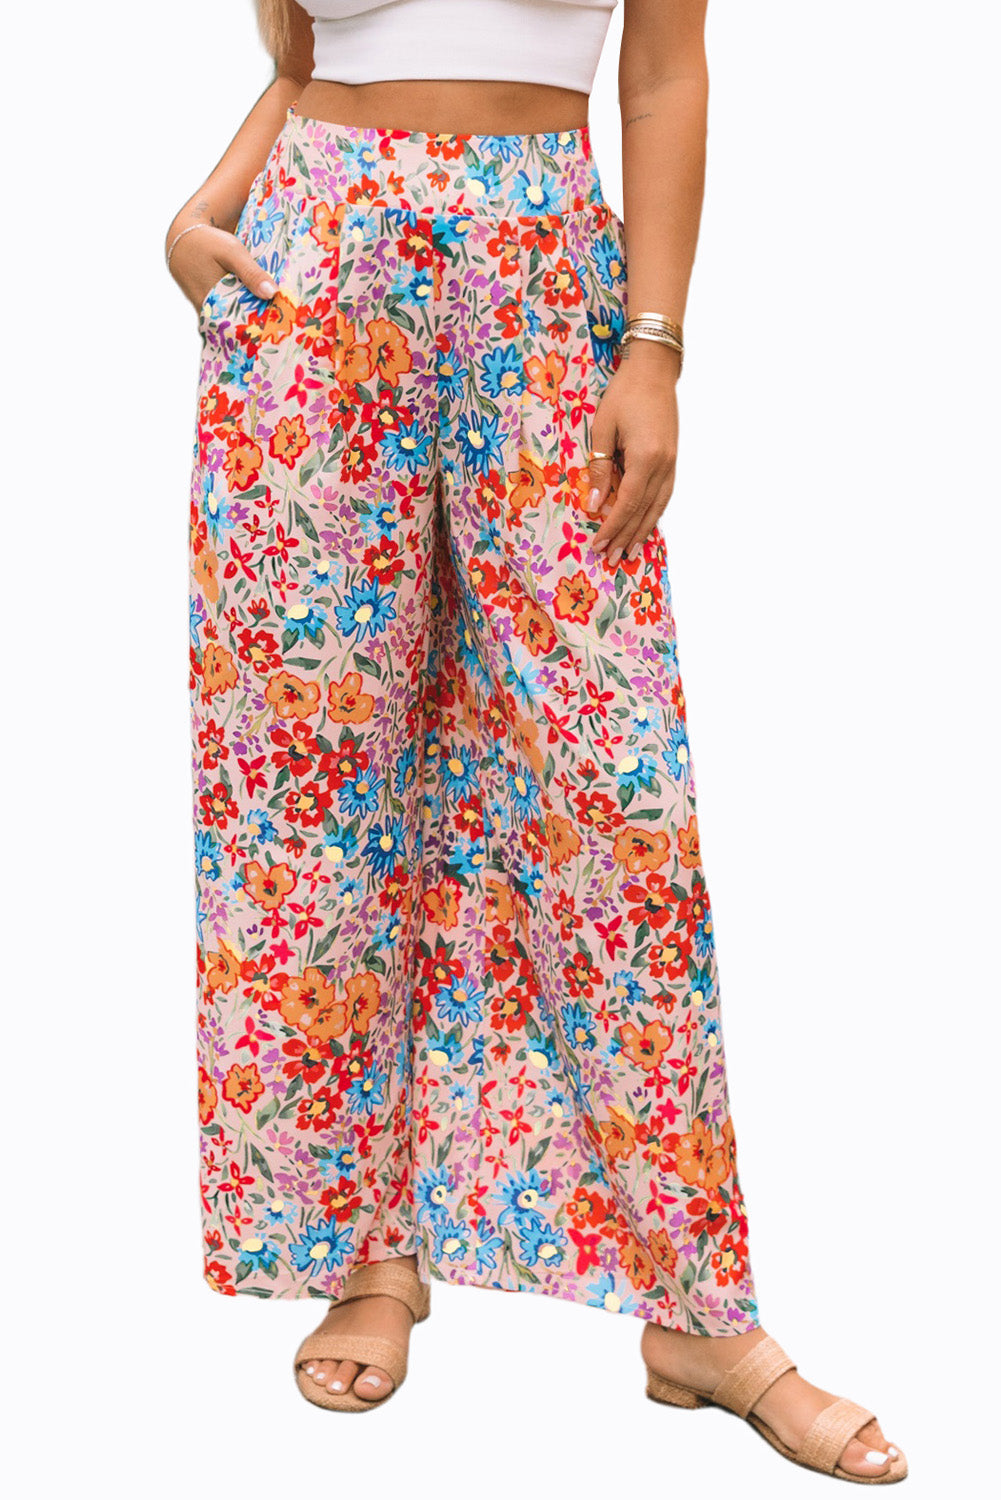 Pantalon oversize multicolore à poches et imprimé floral, jambe large